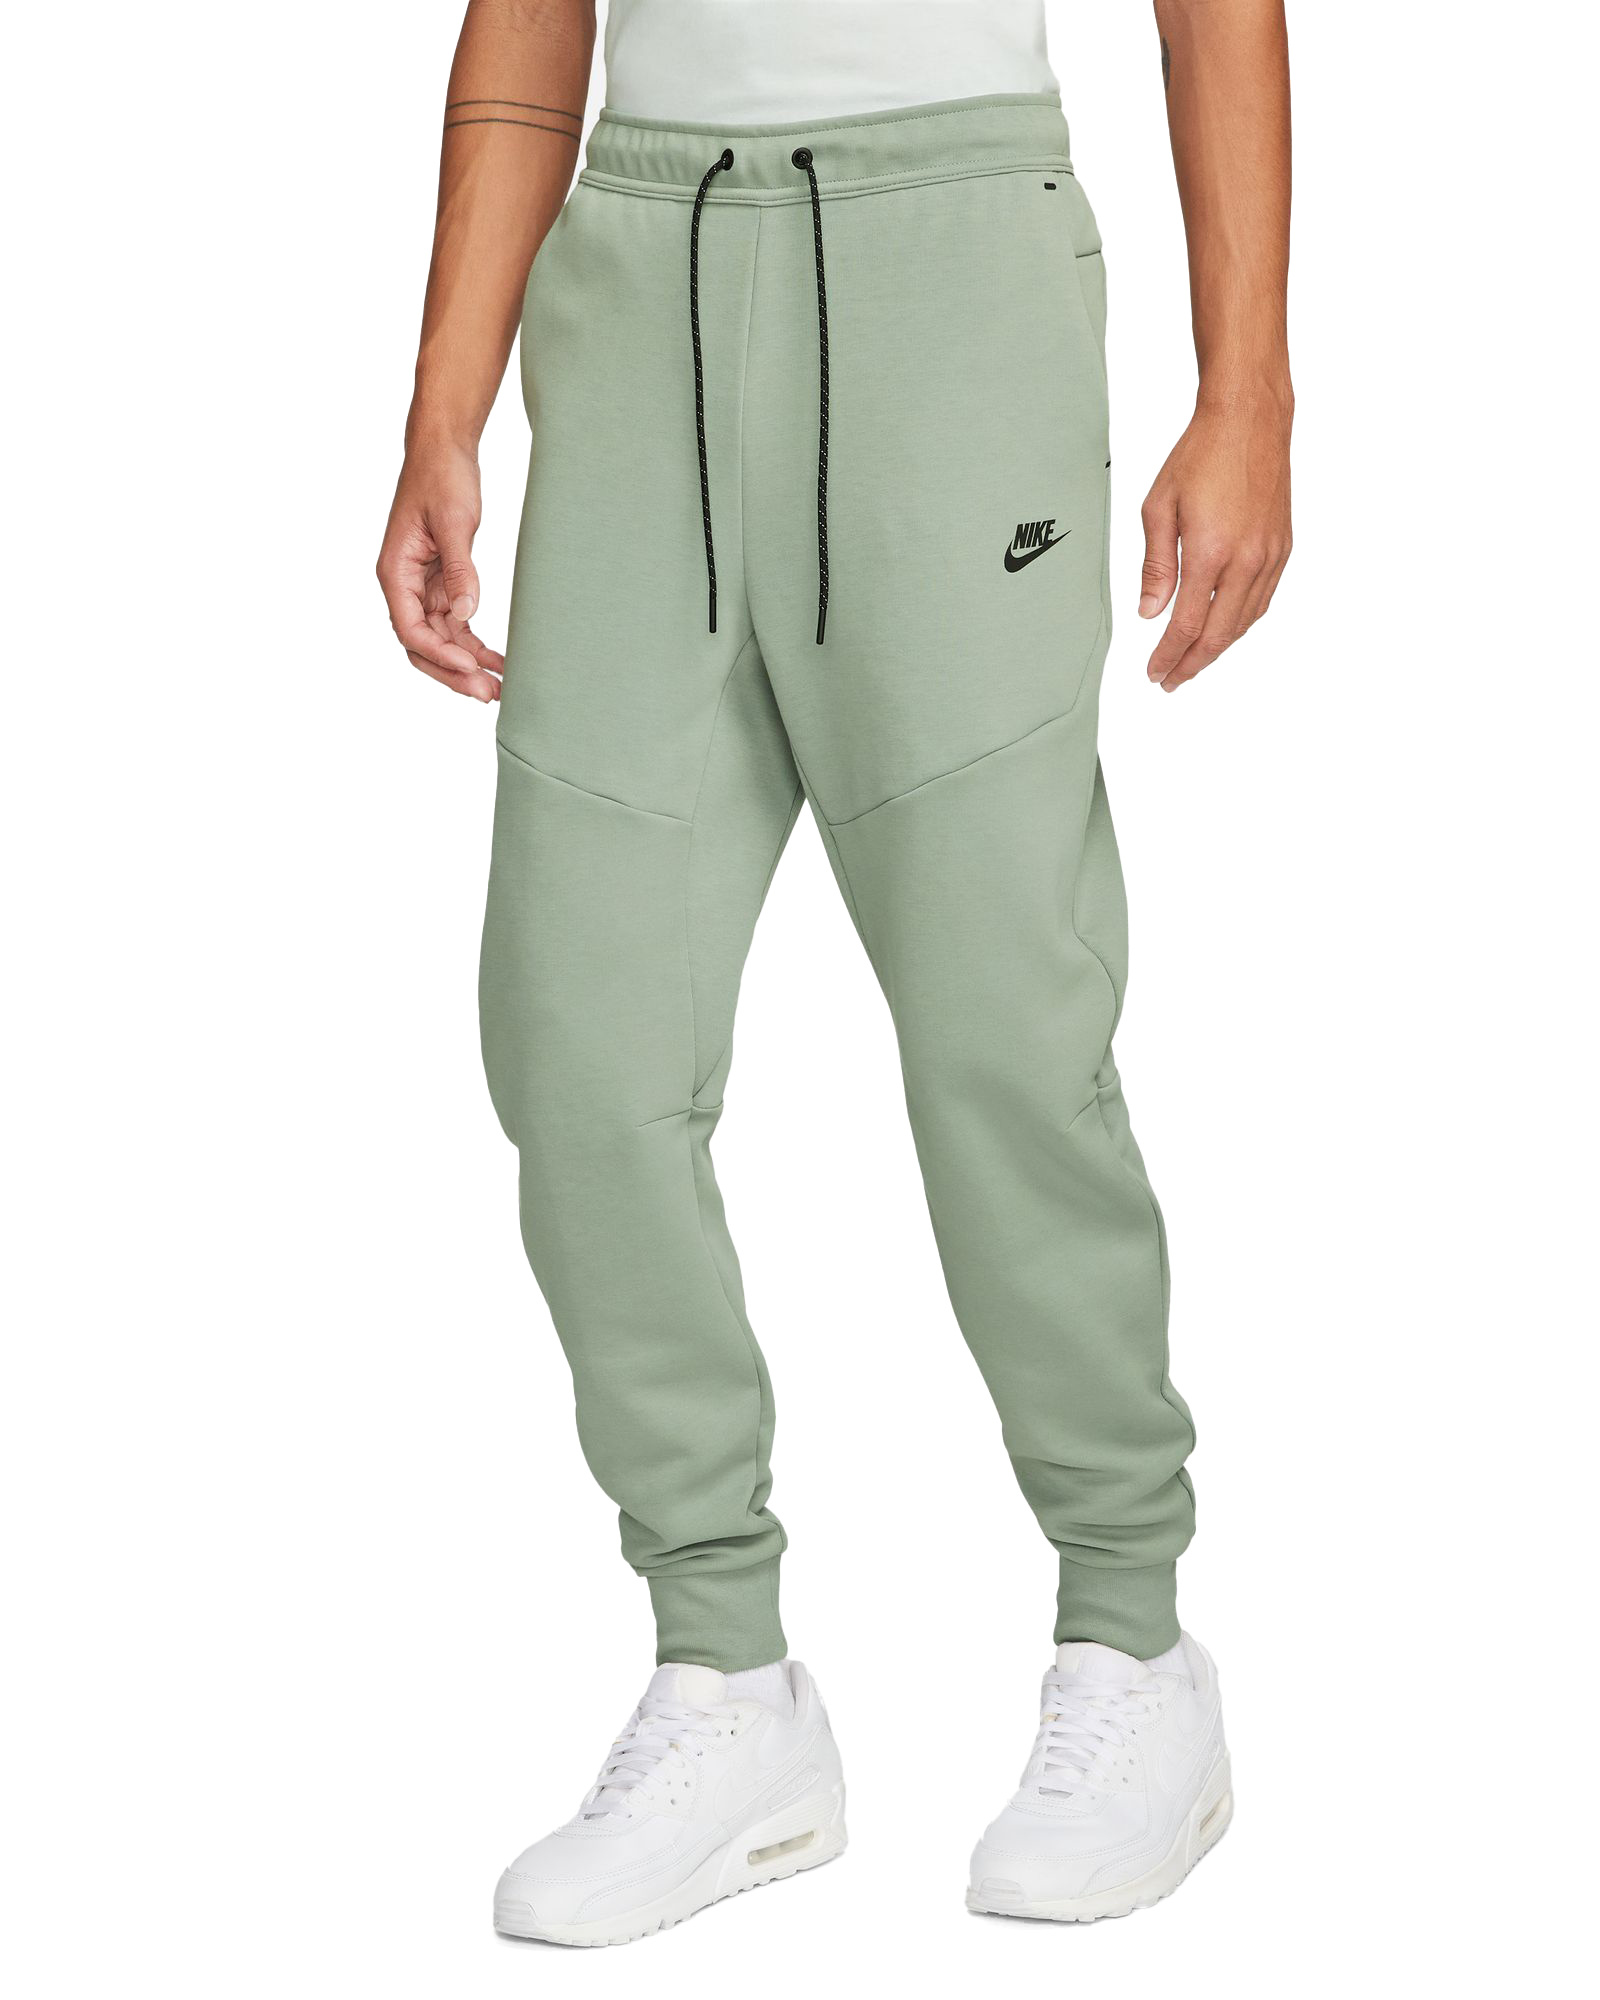 Nike Tech Fleece Jogger Pant - Mica Green/Black - MODA3